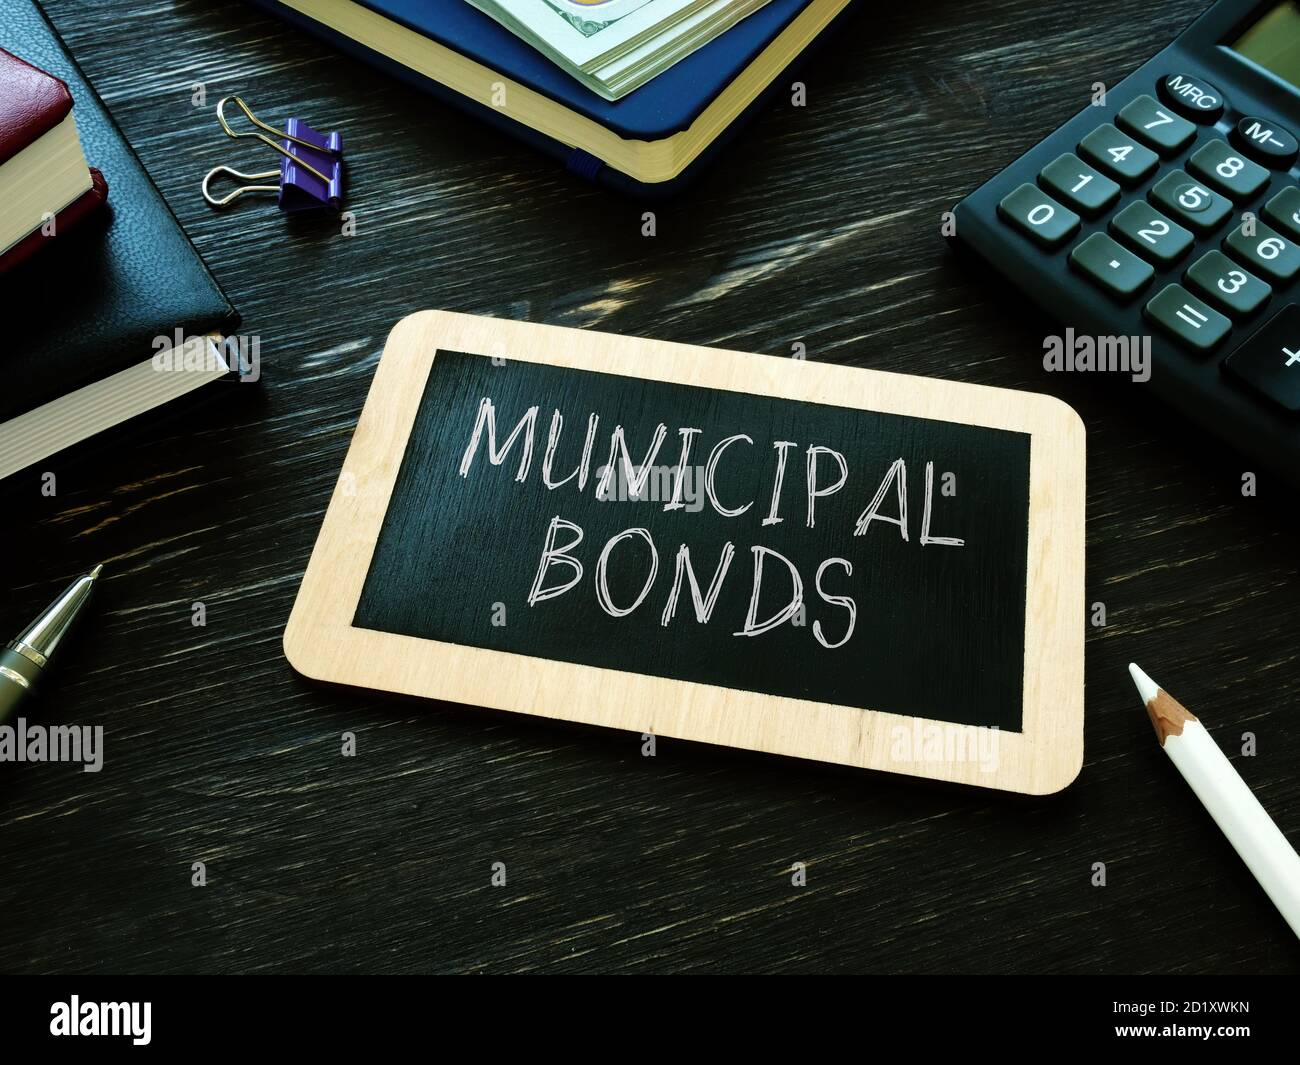 Municipal bonds written on the small blackboard. Stock Photo